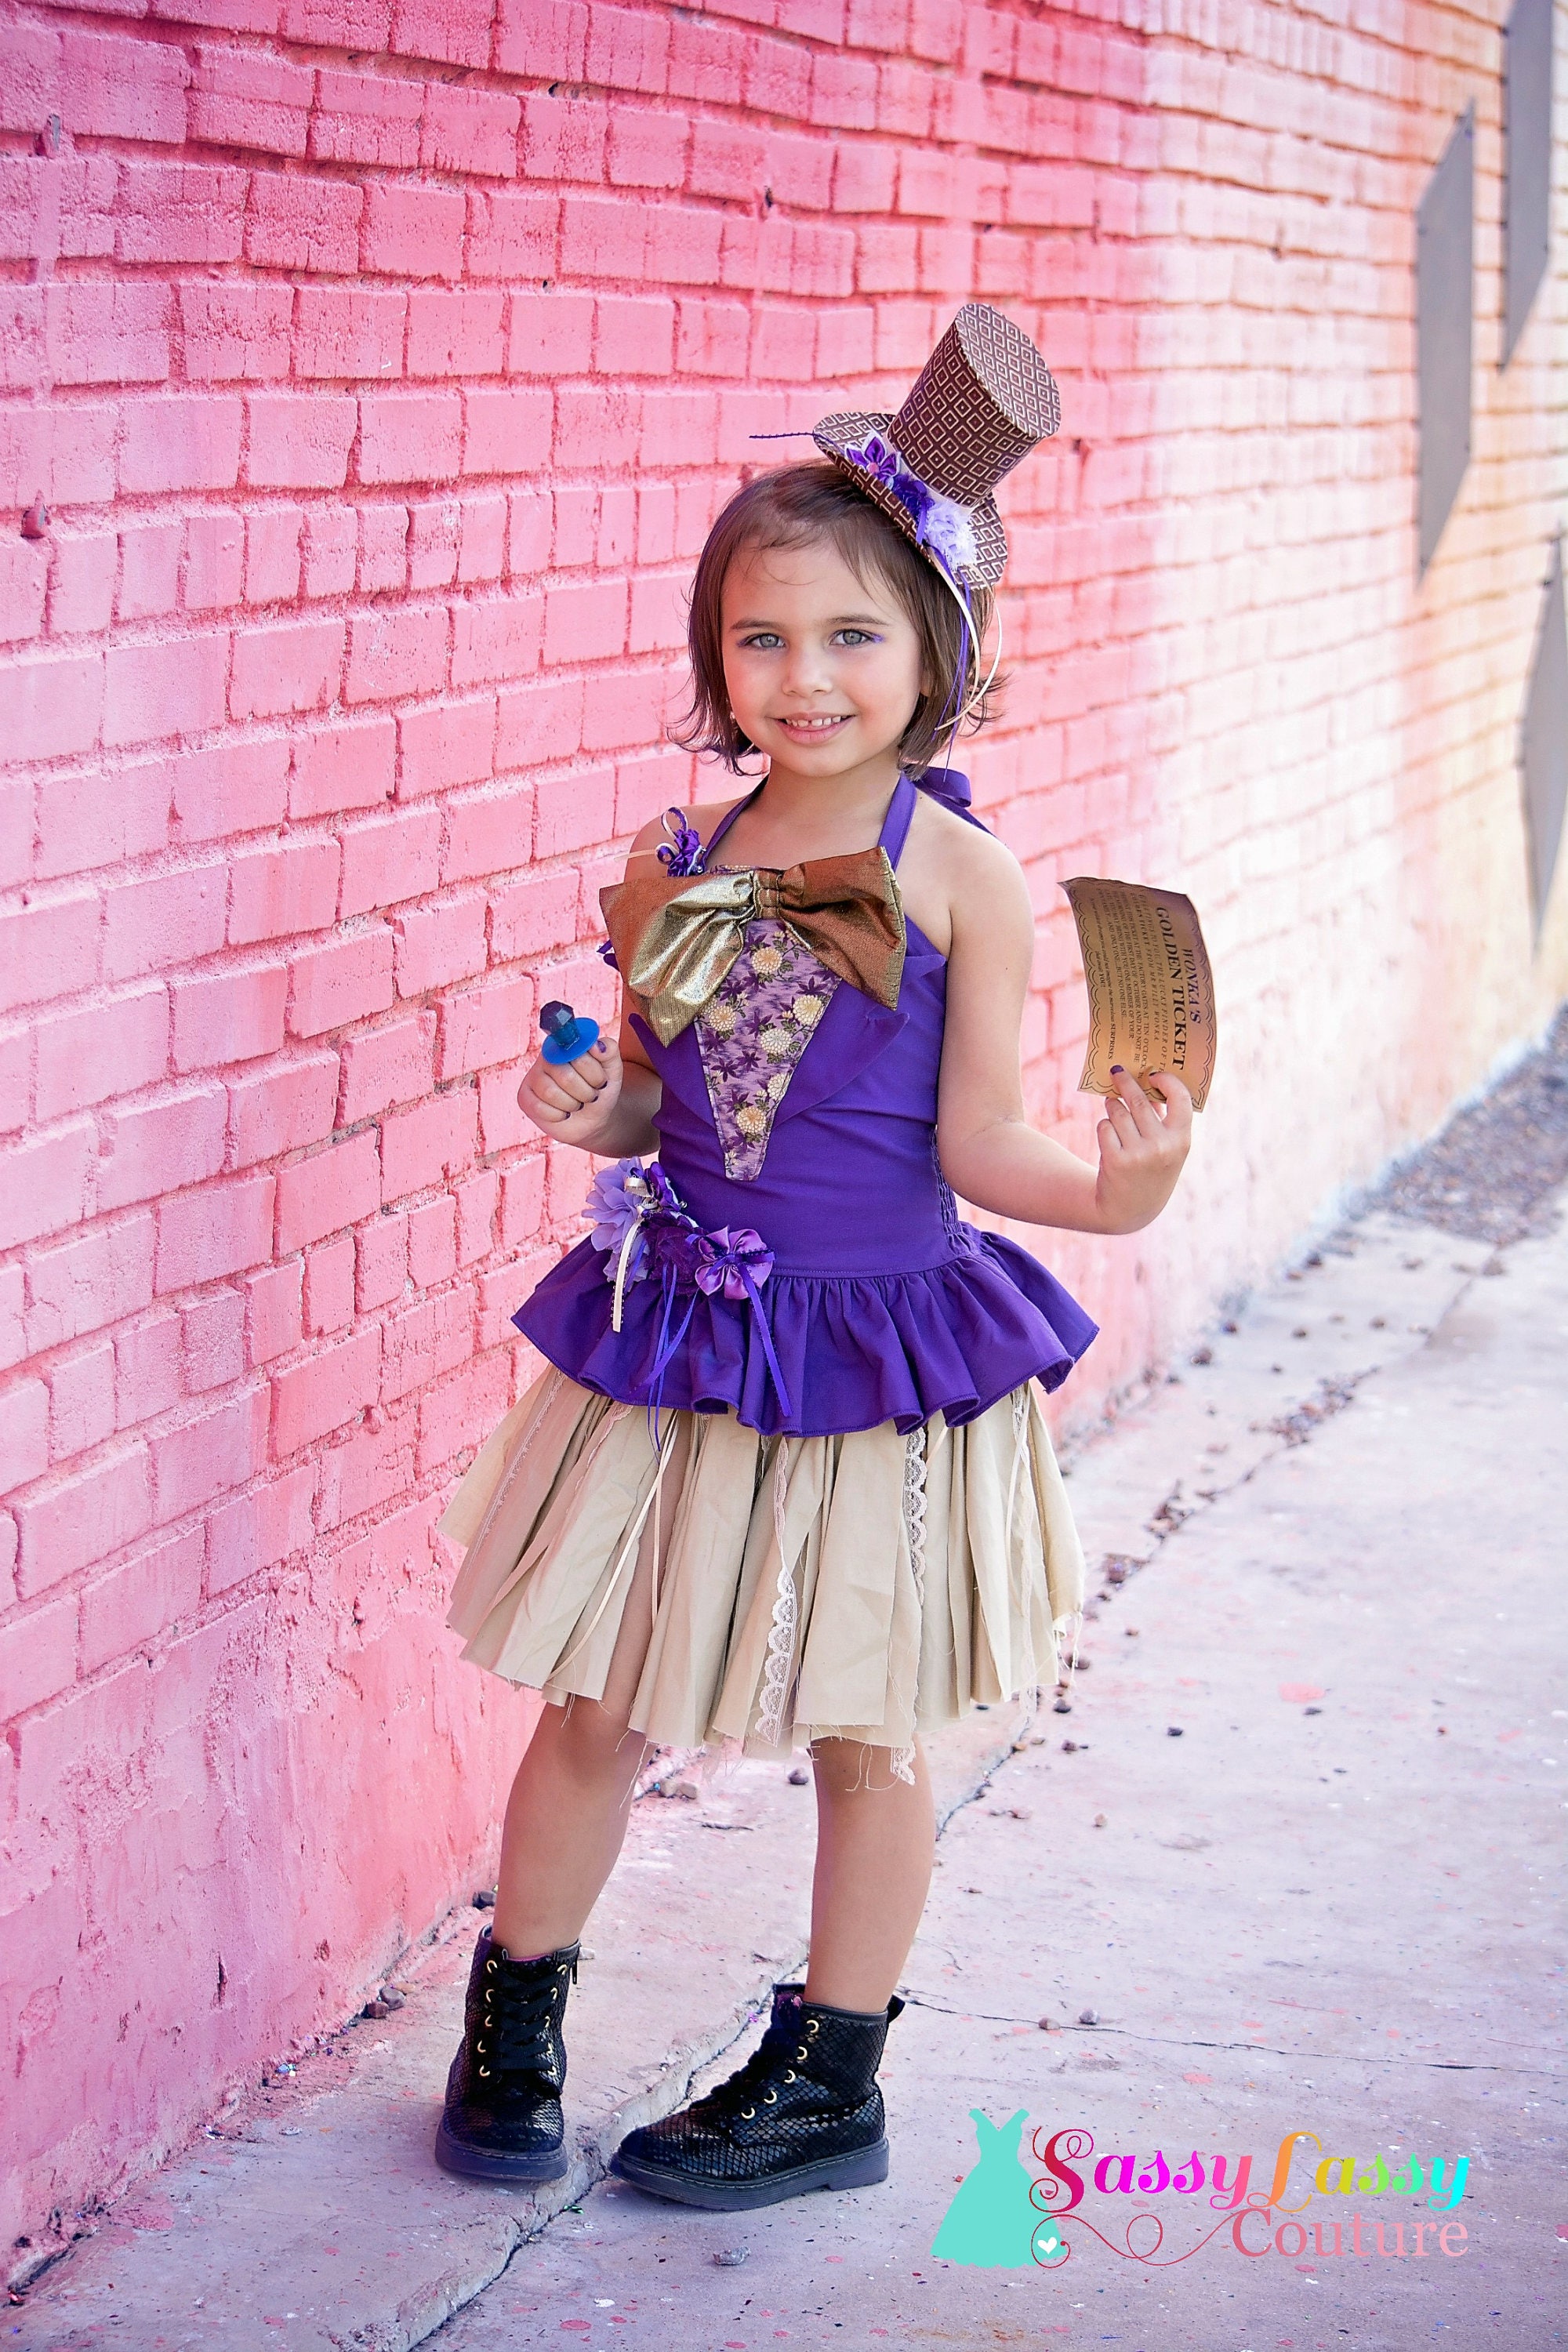 Willie Wonka Inspired Costume, Charlie Chocolate Factory Costume, Chocolate  Girl Costume, Halloween Costume, Girls Halloween, Candy Dress -  Italia